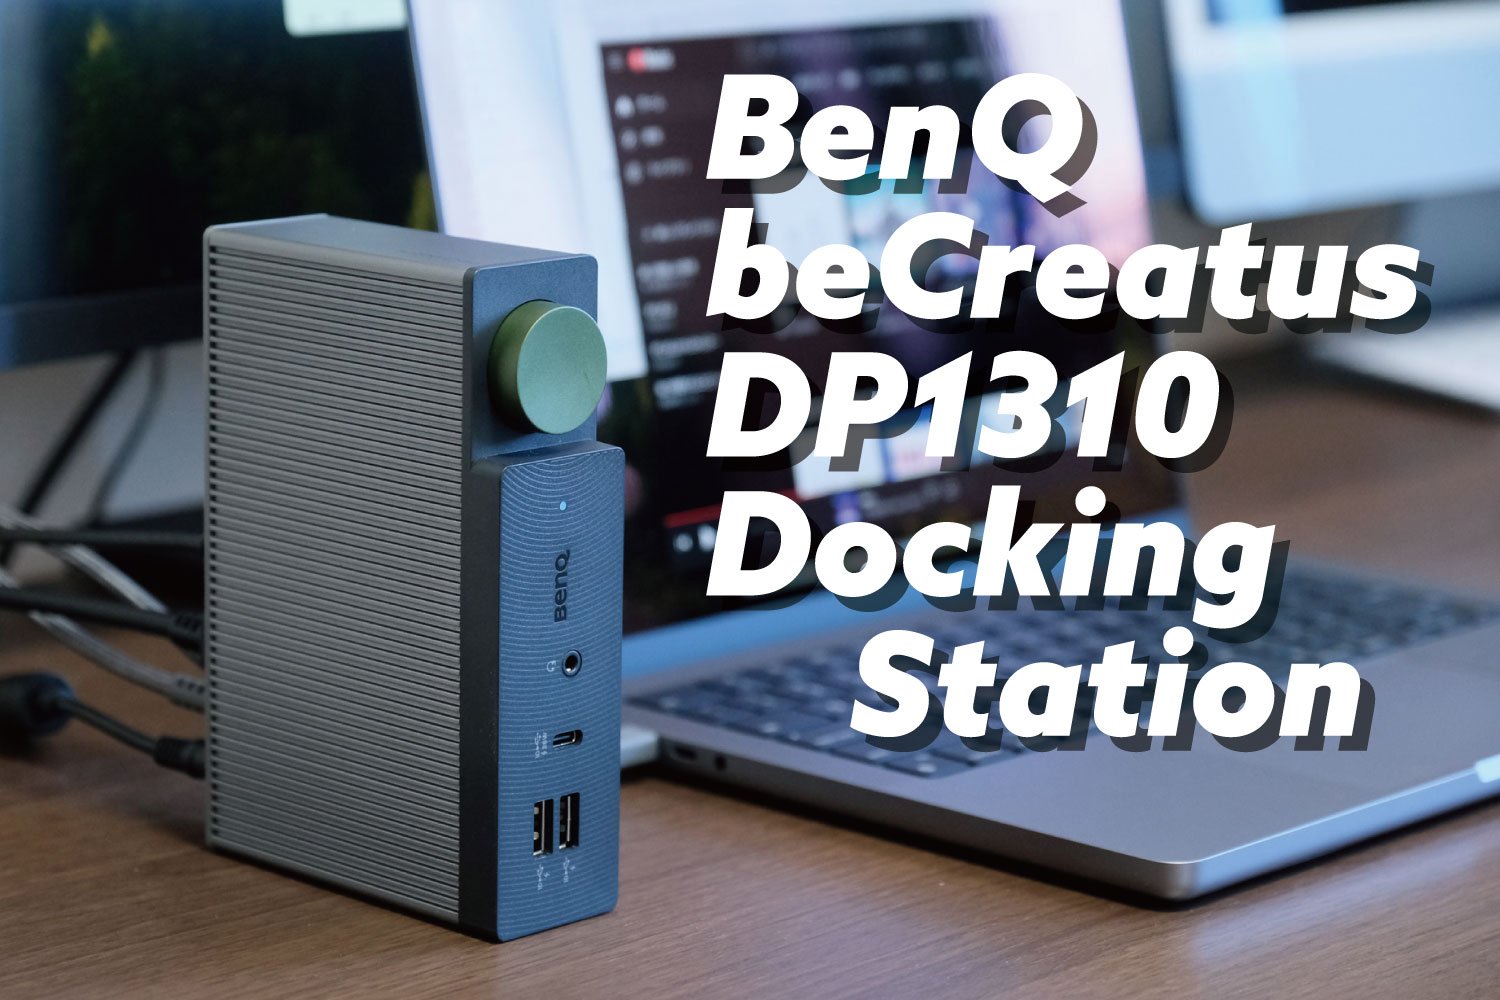 BenQ beCreatus DP1310 Docking Station